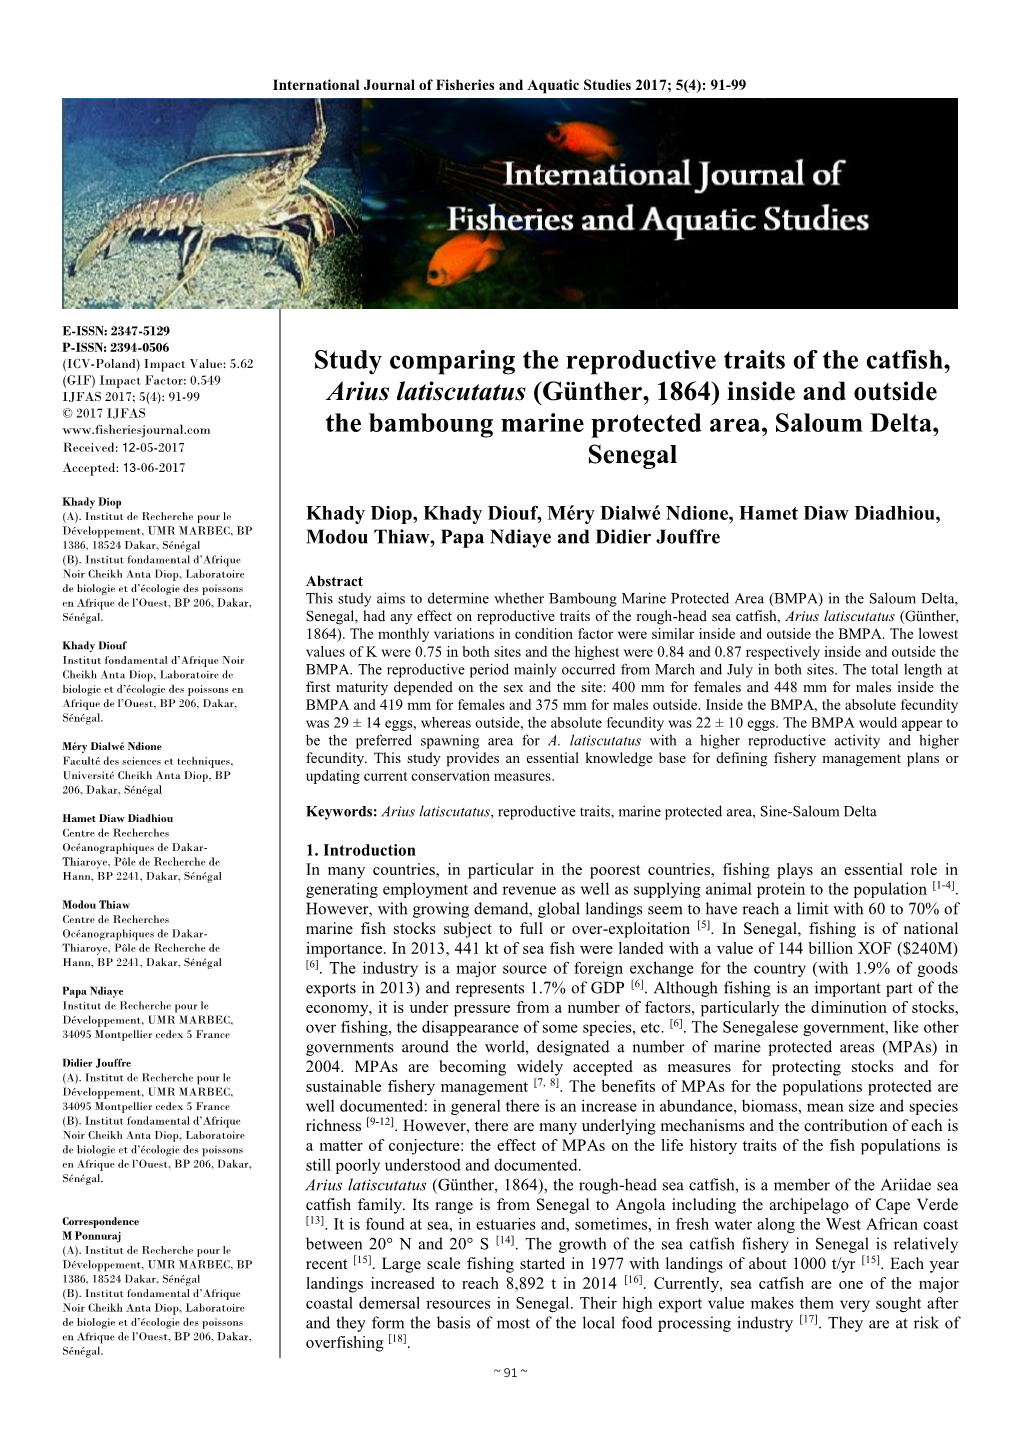 Study Comparing the Reproductive Traits of the Catfish, Arius Latiscutatus